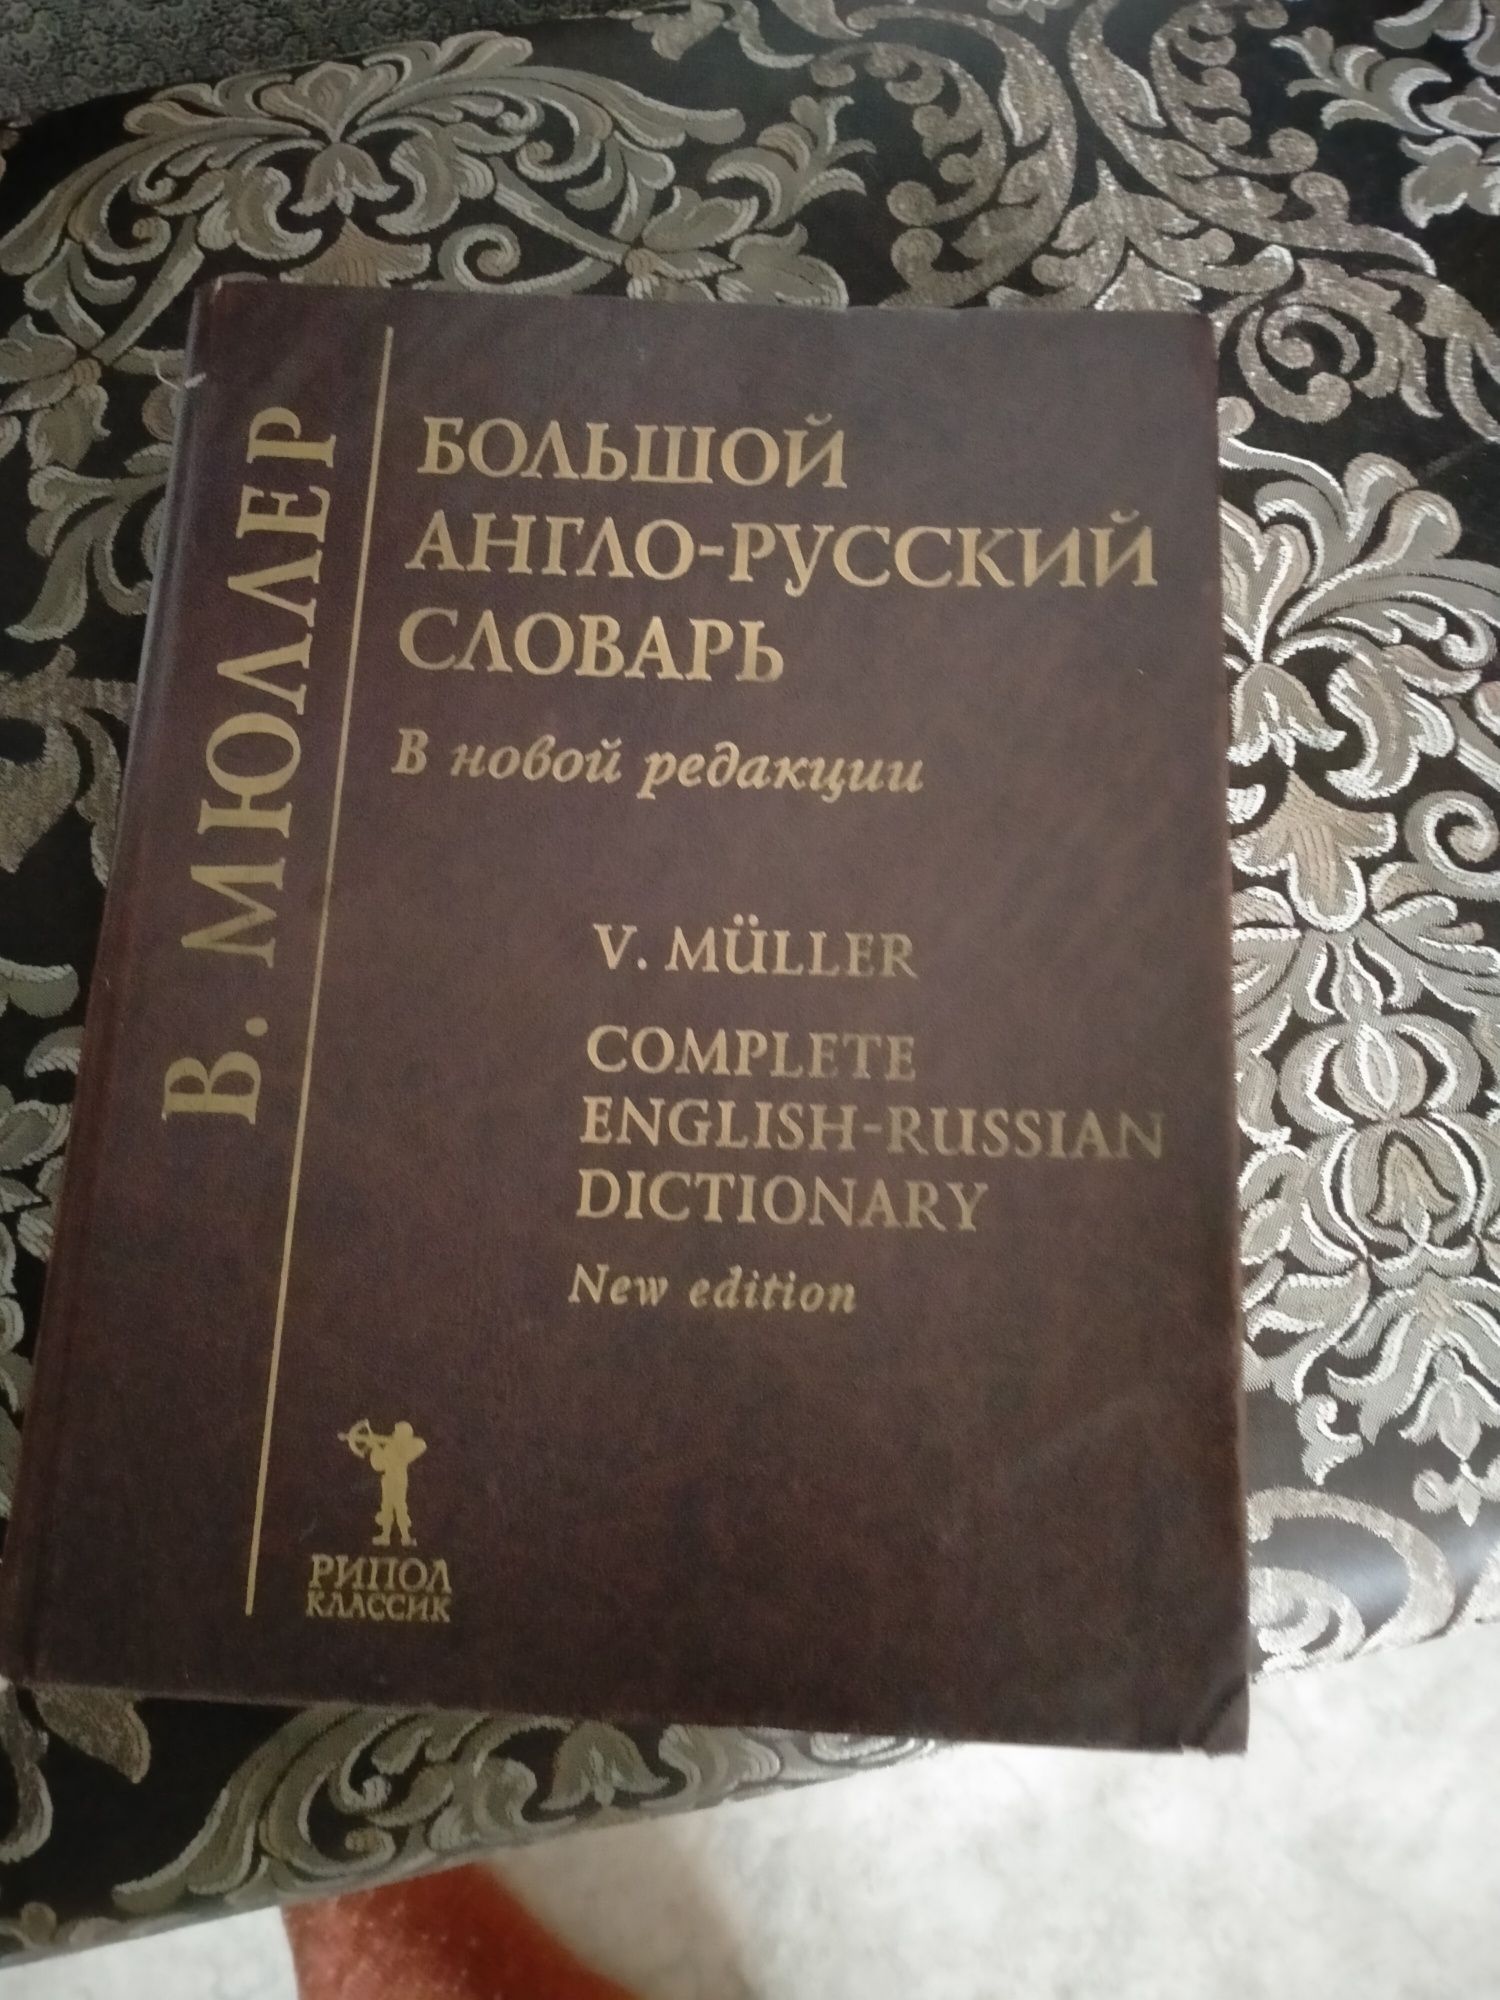 Продам словарь большой англо-русский